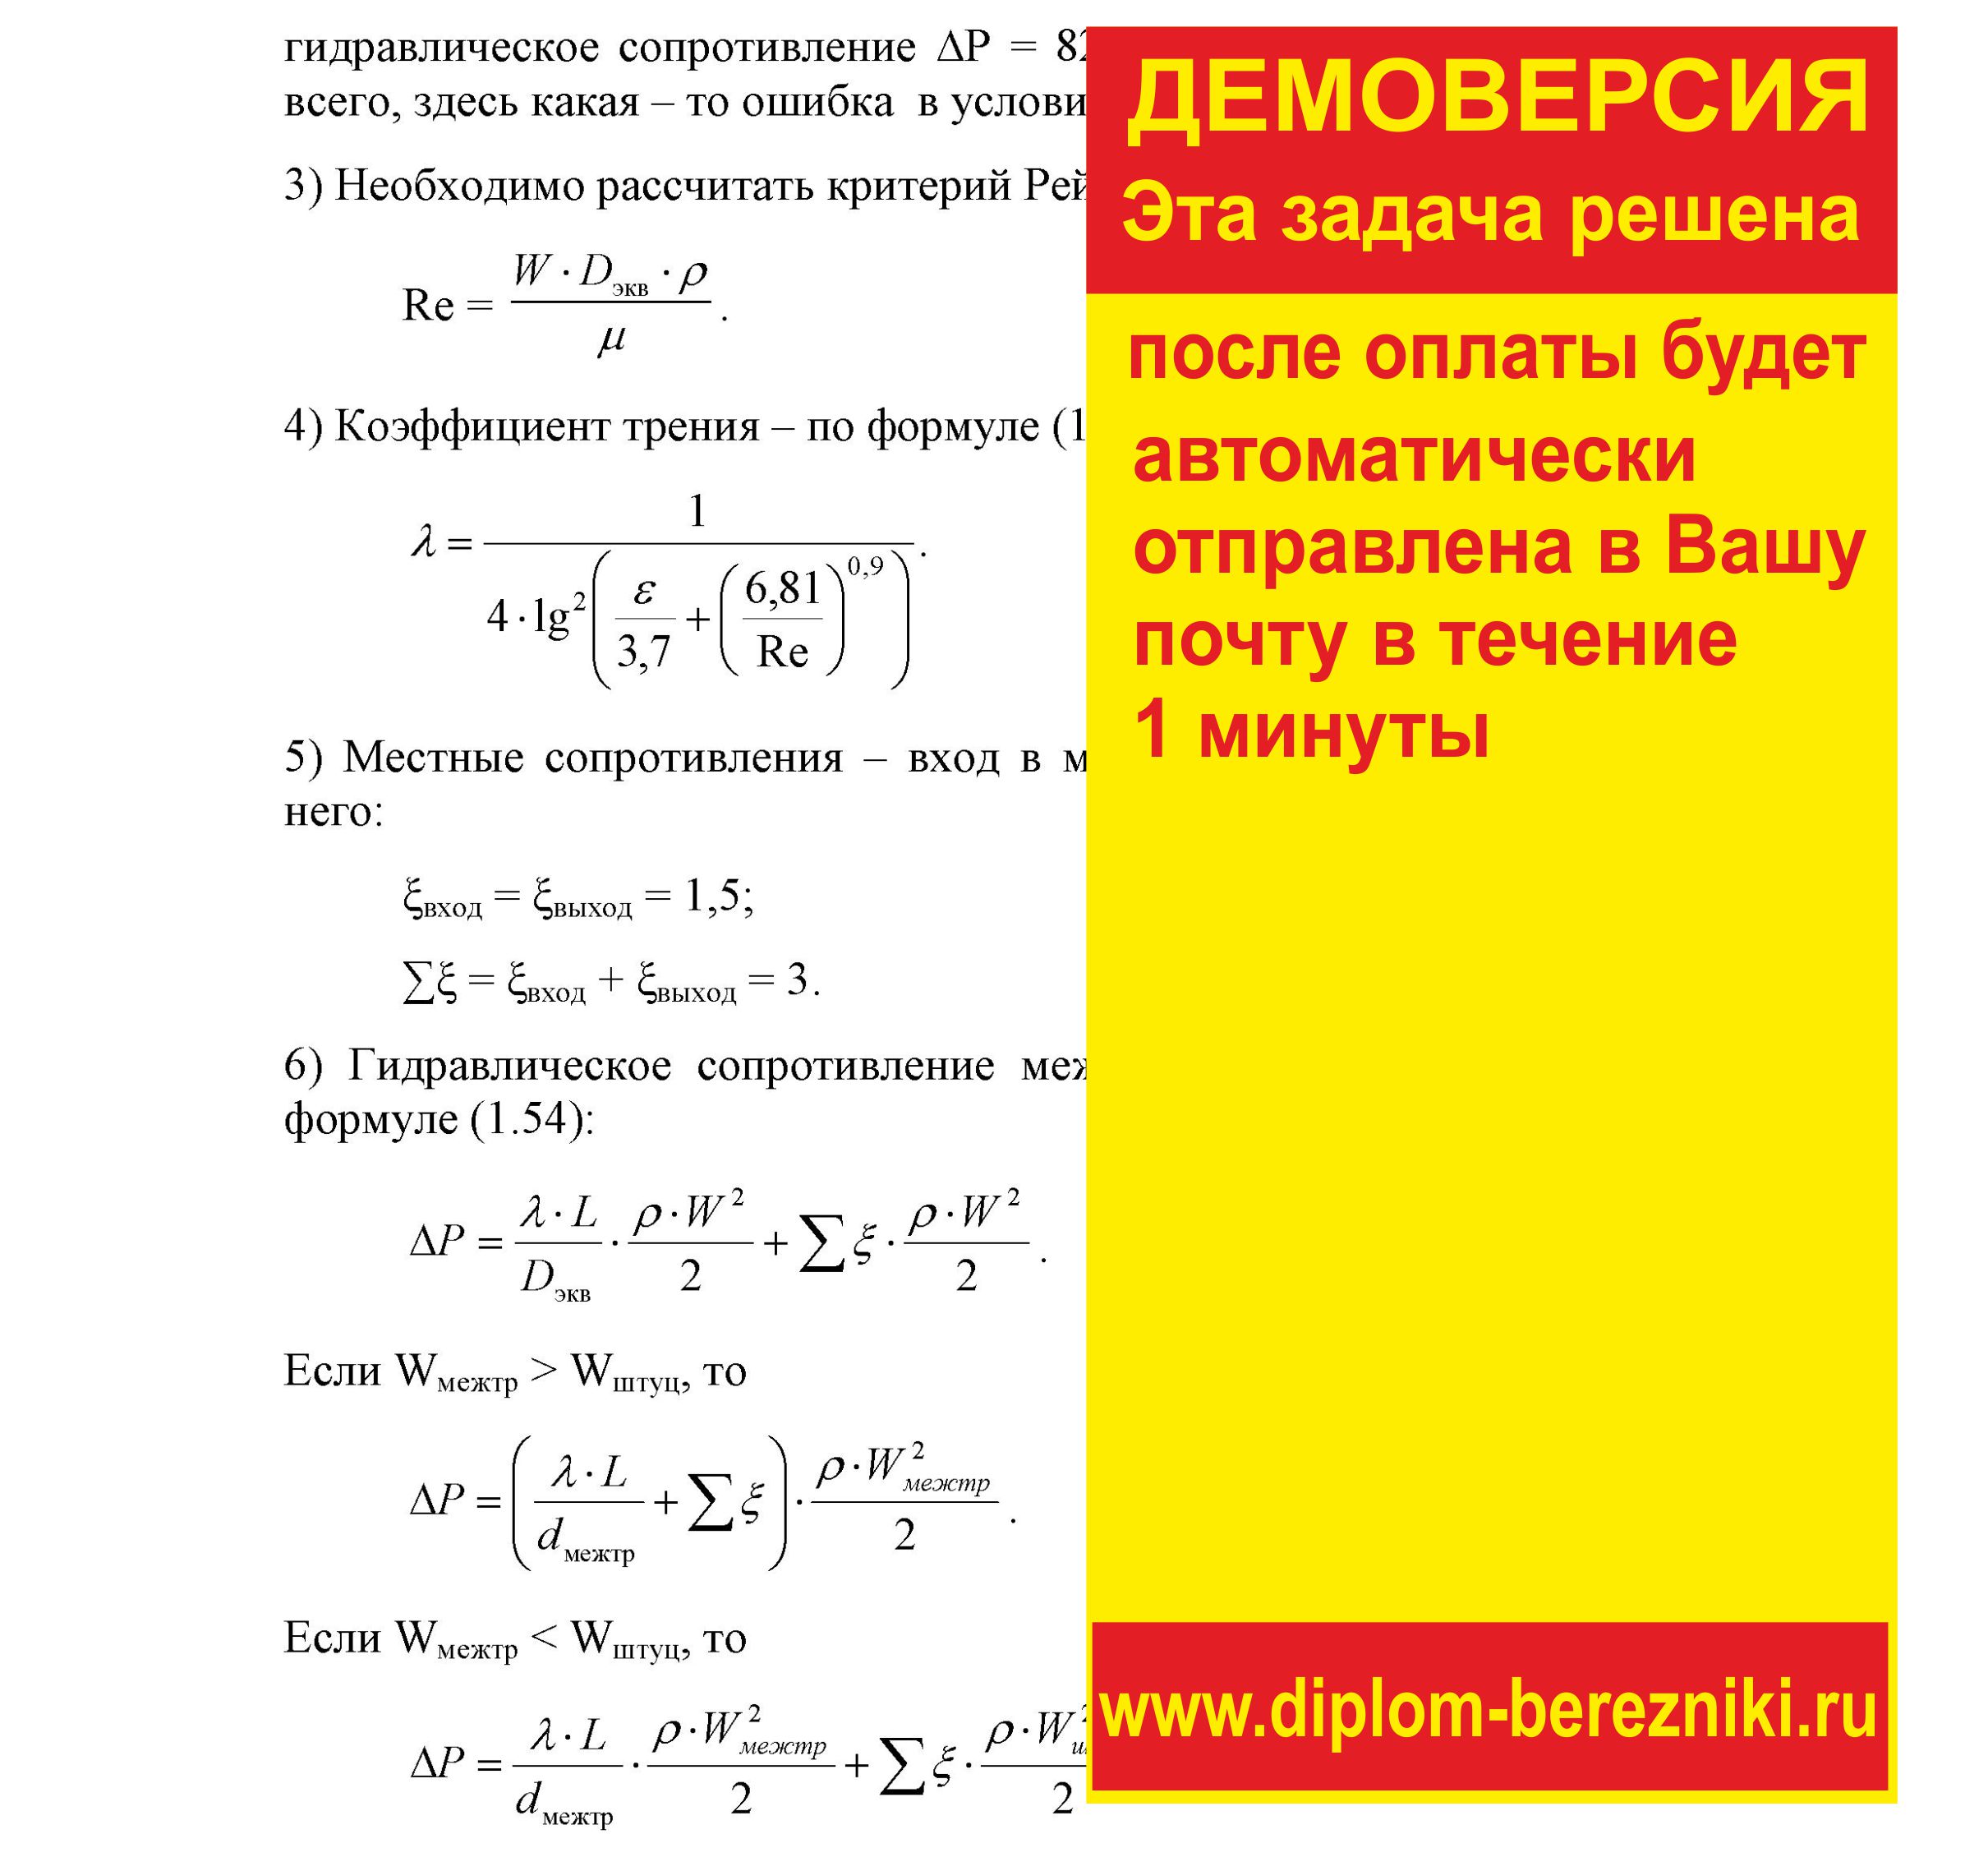 Решение задачи 1.36 по ПАХТ из задачника Павлова Романкова Носкова